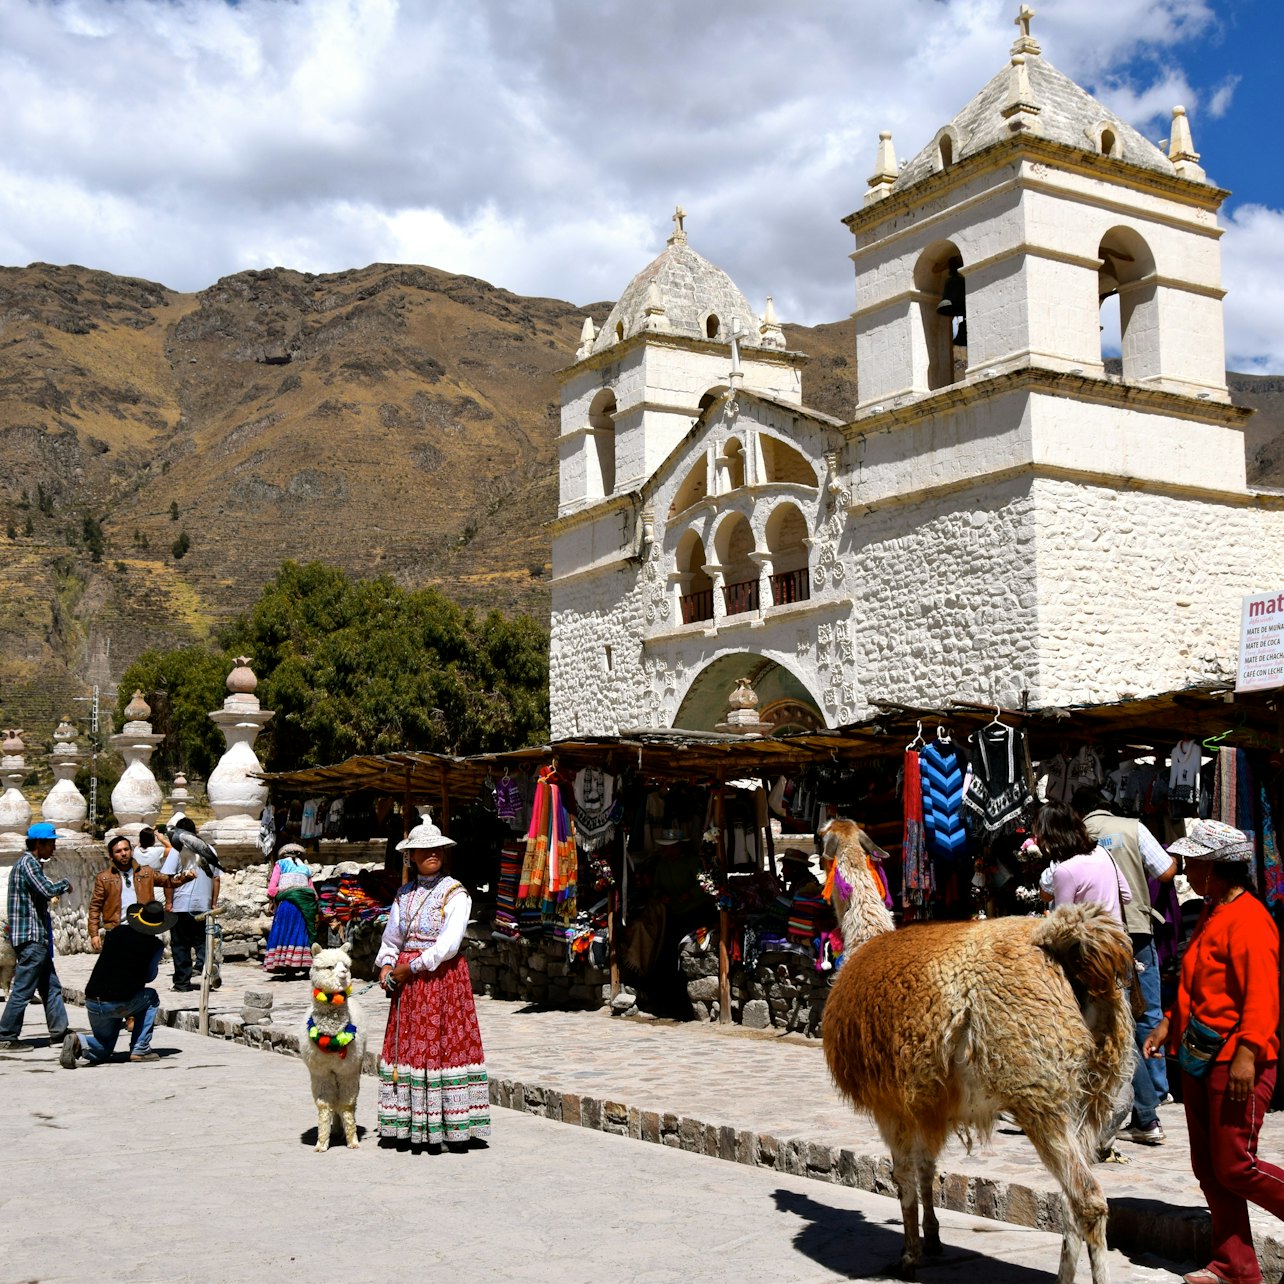 Excursão de 1 dia ao Vale Sagrado a partir de Cusco - Acomodações em Cusco